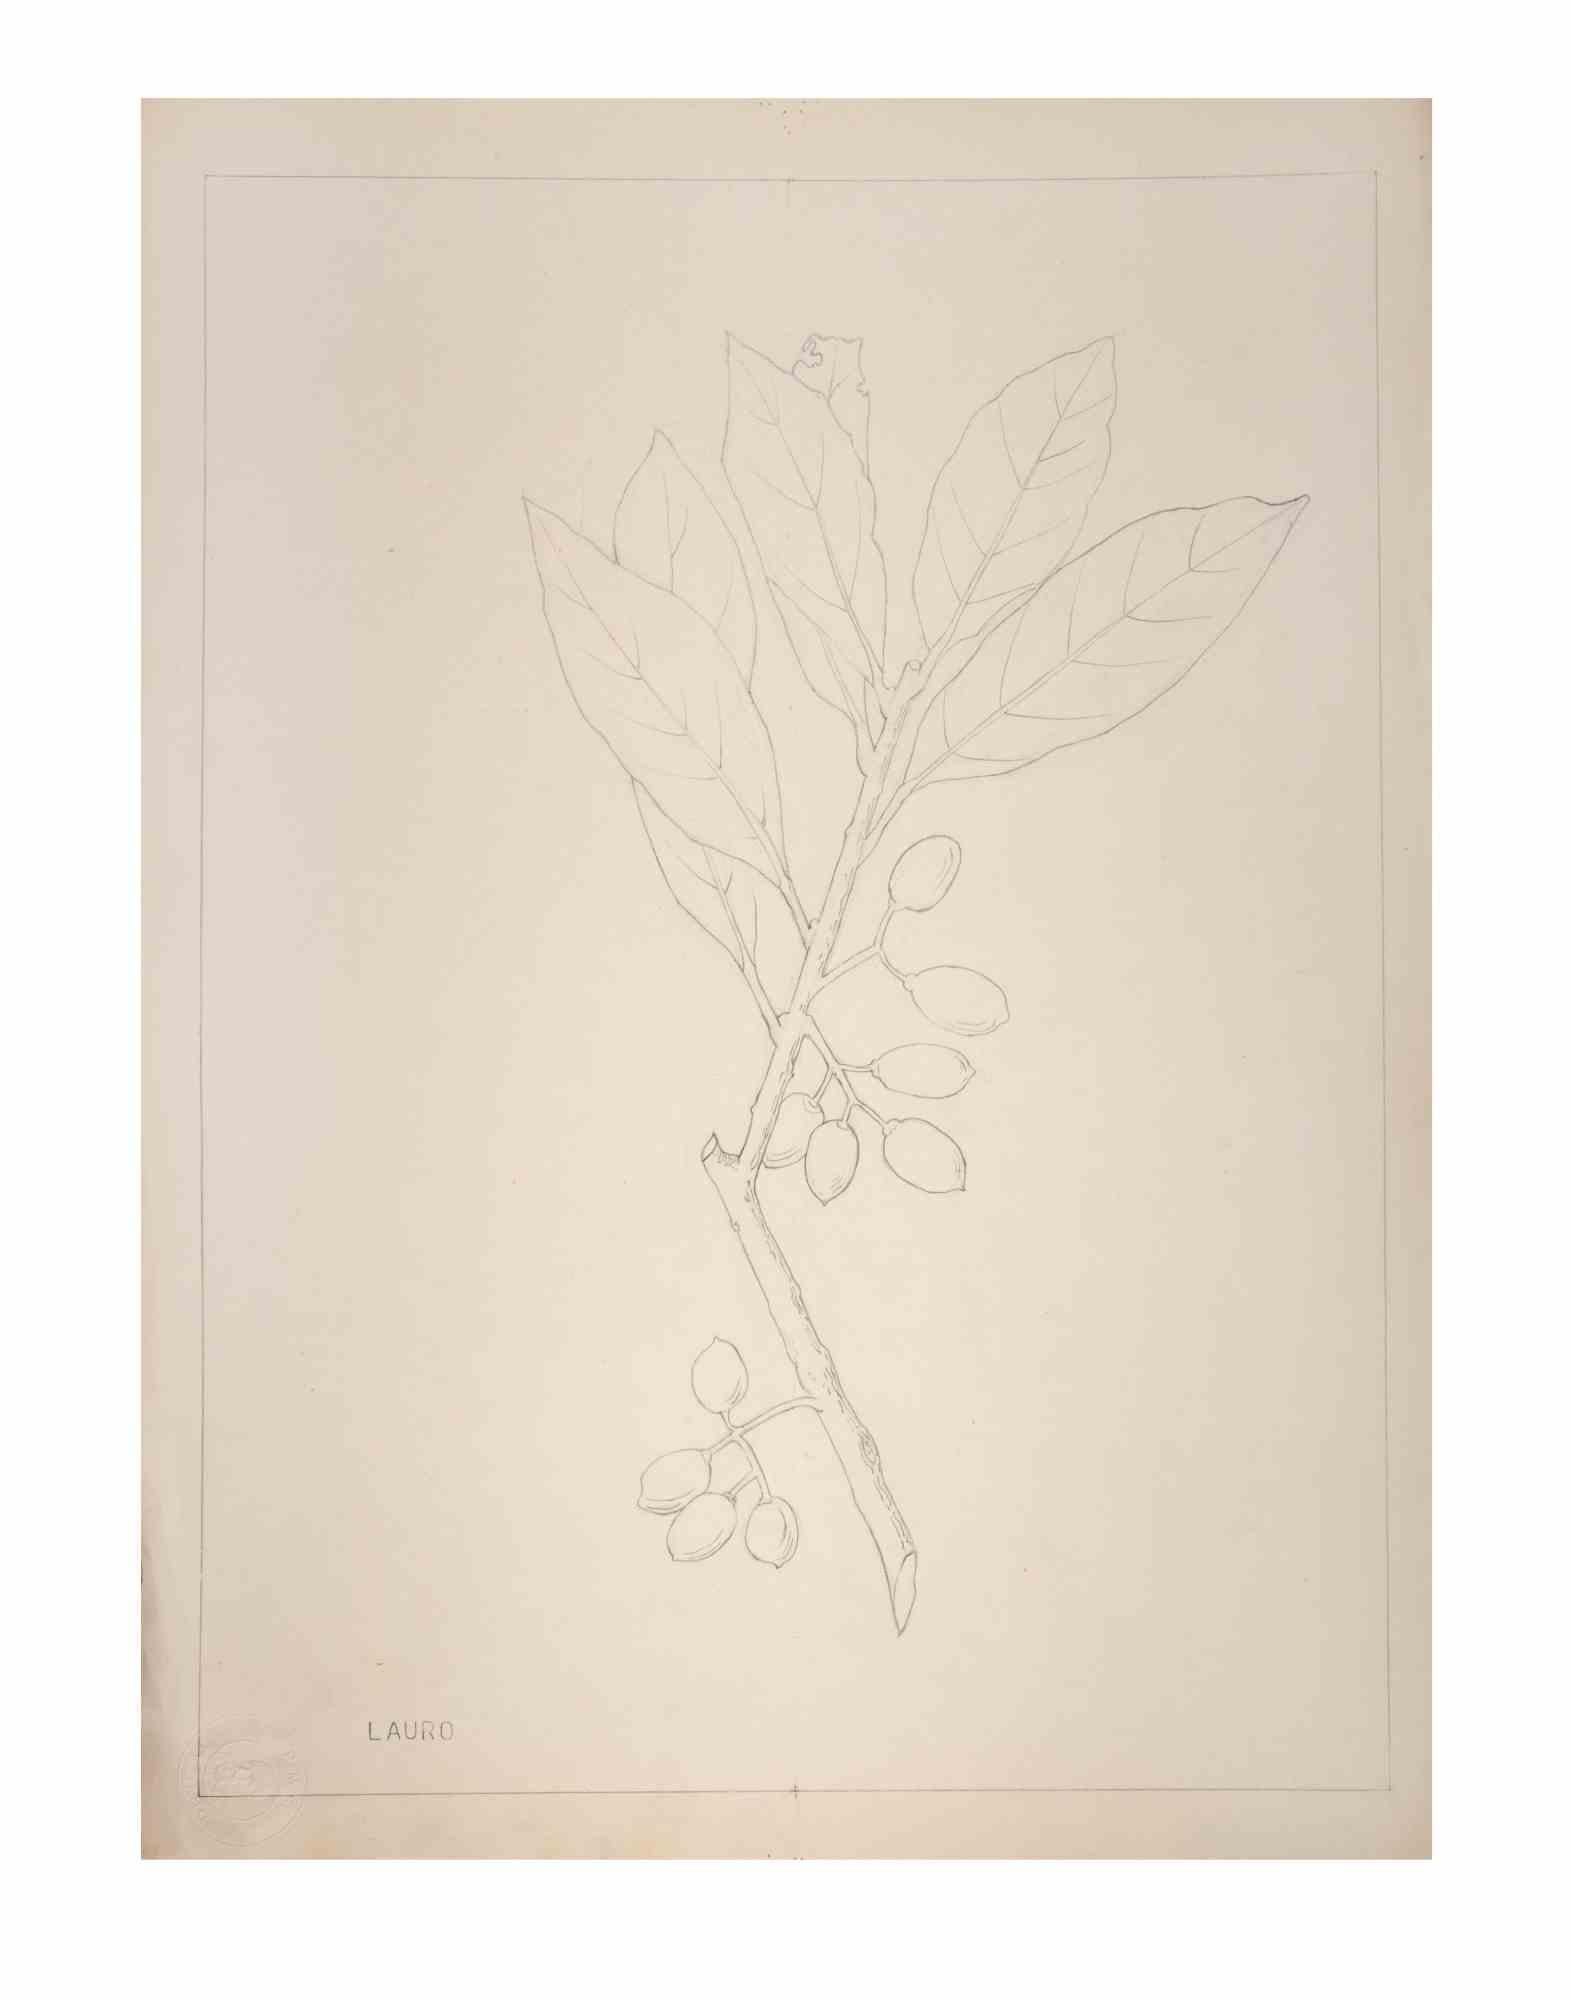 Laurel (Lauro) ist ein Kunstwerk des italienischen Künstlers Aurelio Mistruzzi aus dem Jahr 1905.

Bleistiftzeichnung auf Papier, betitelt "Lauro" und Stempel "P.M.F. Tiziano" in der linken Ecke.

Gute Bedingungen.

Aurelio Mistruzzi (1880-1960)